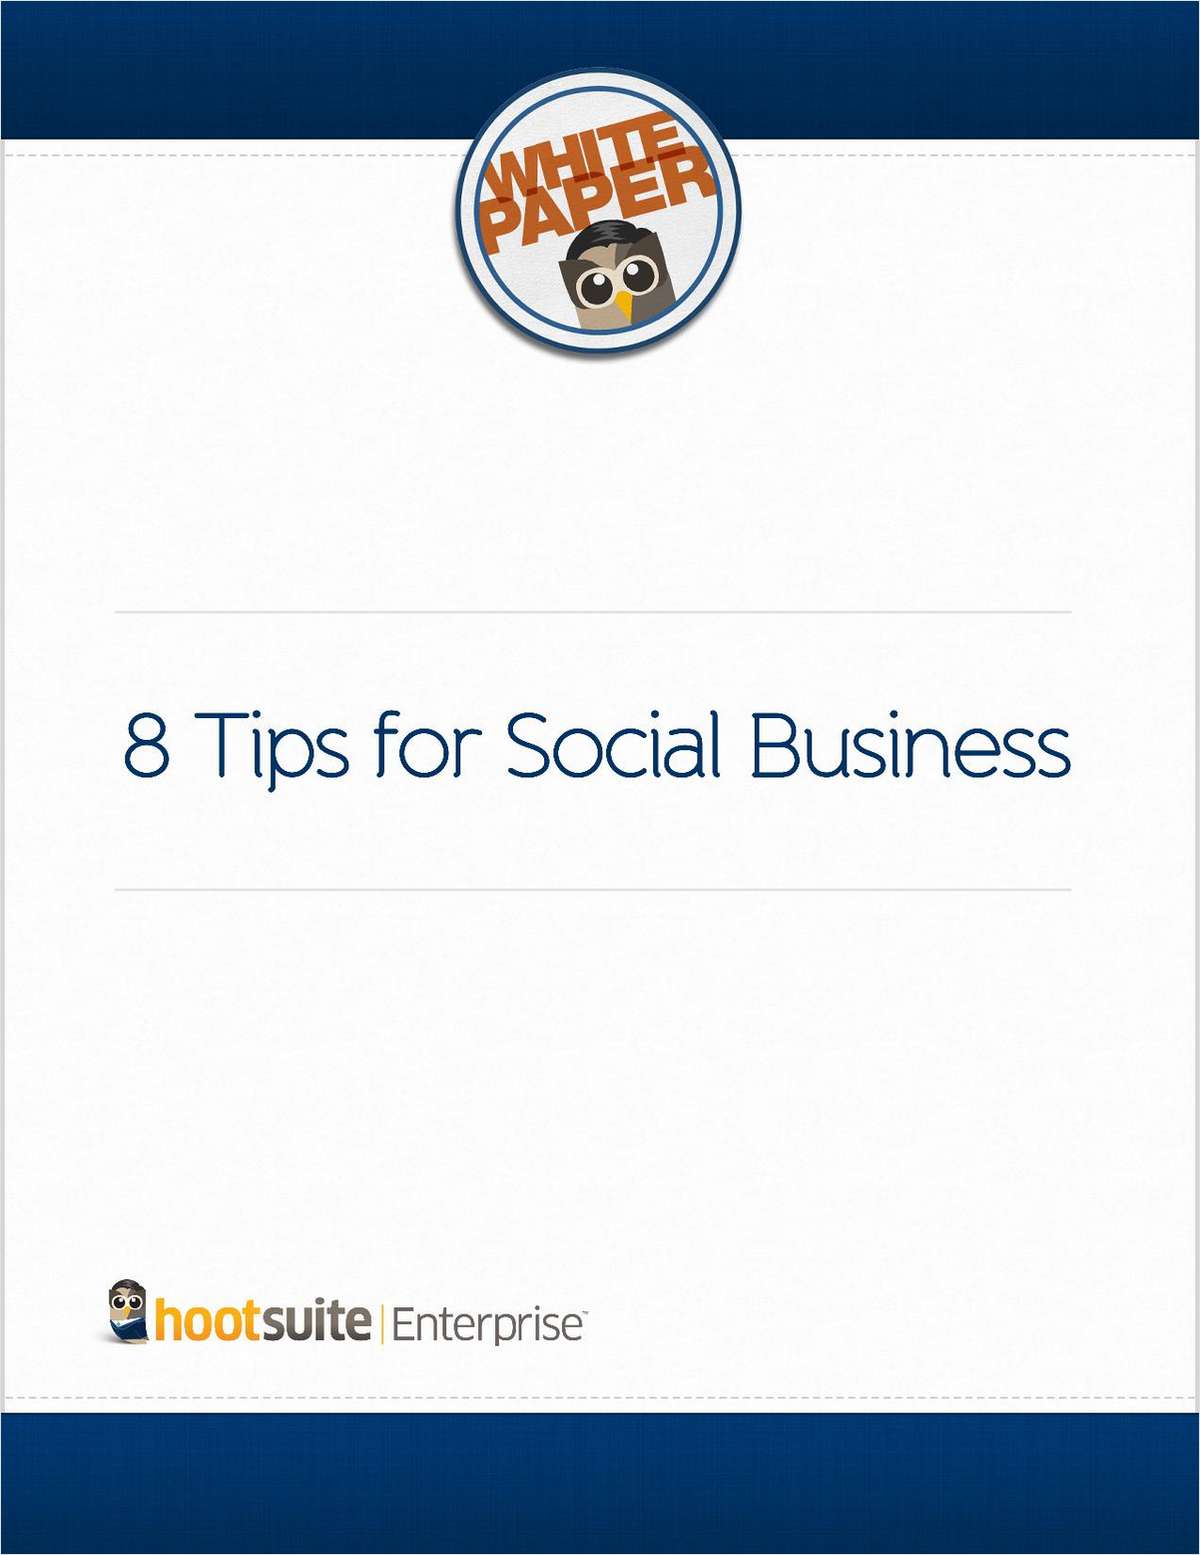 8 Tips for Social Business